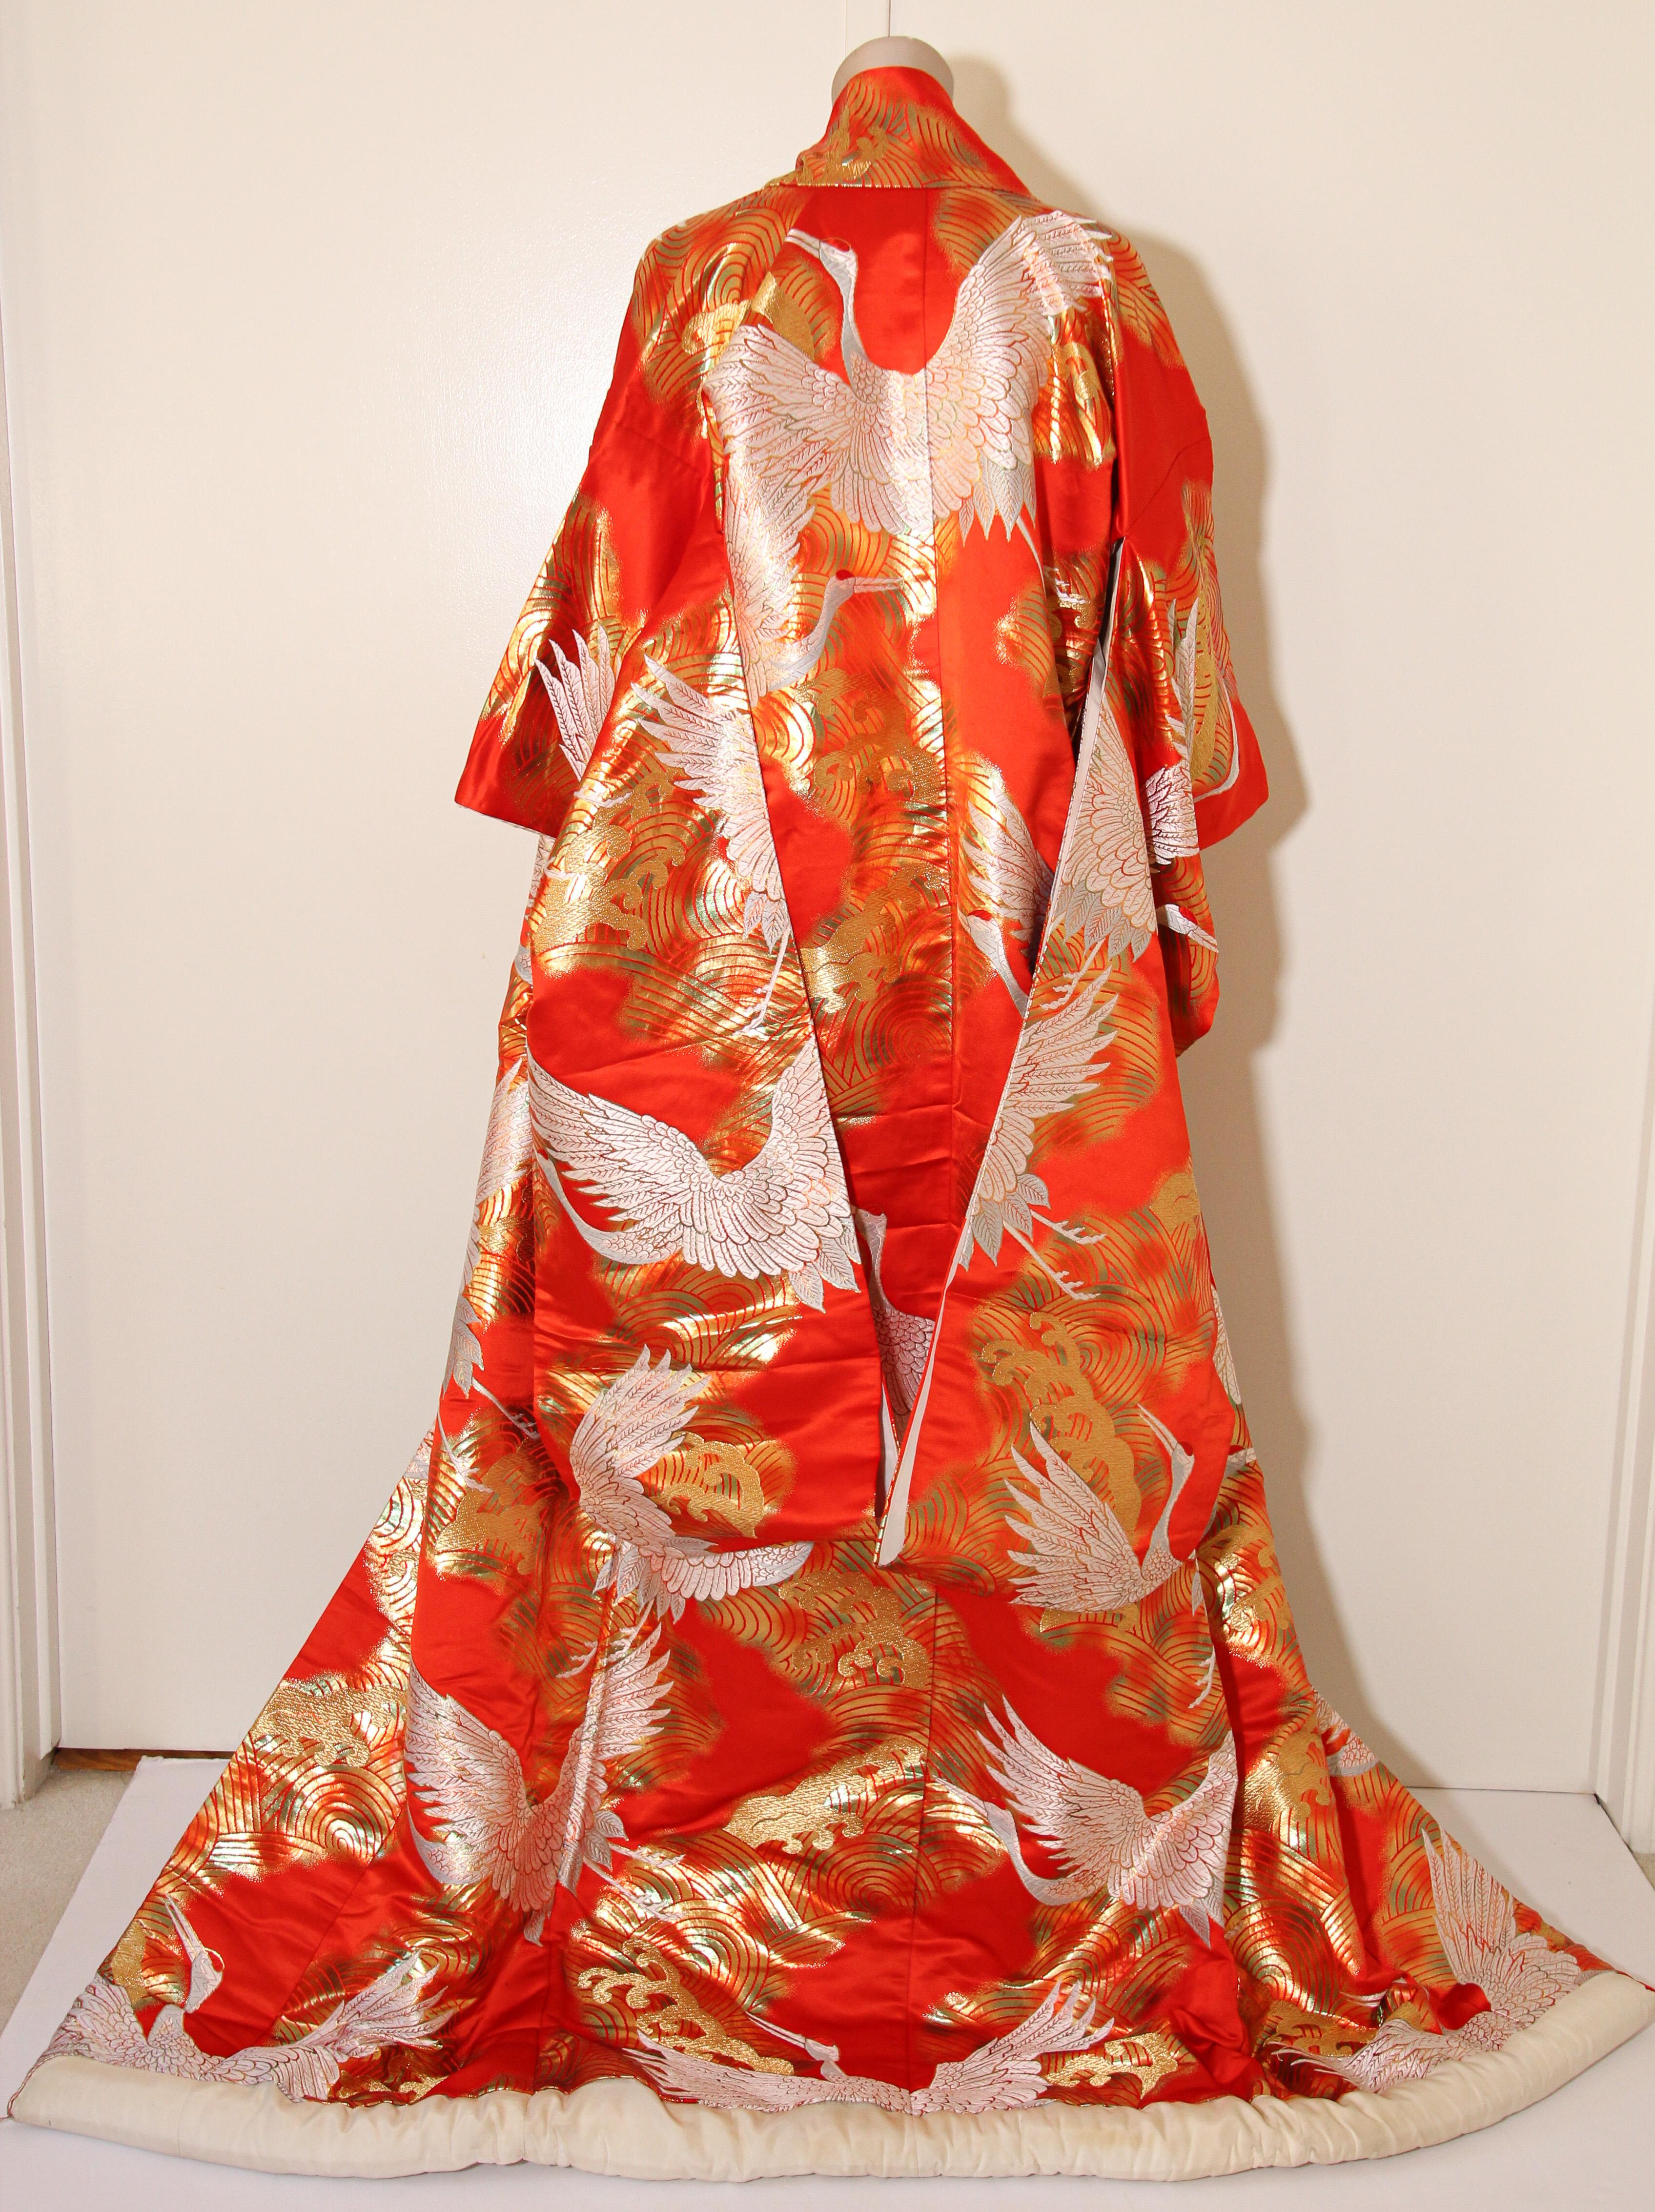 Japanese Wedding Kimono 7 For Sale On 1stdibs